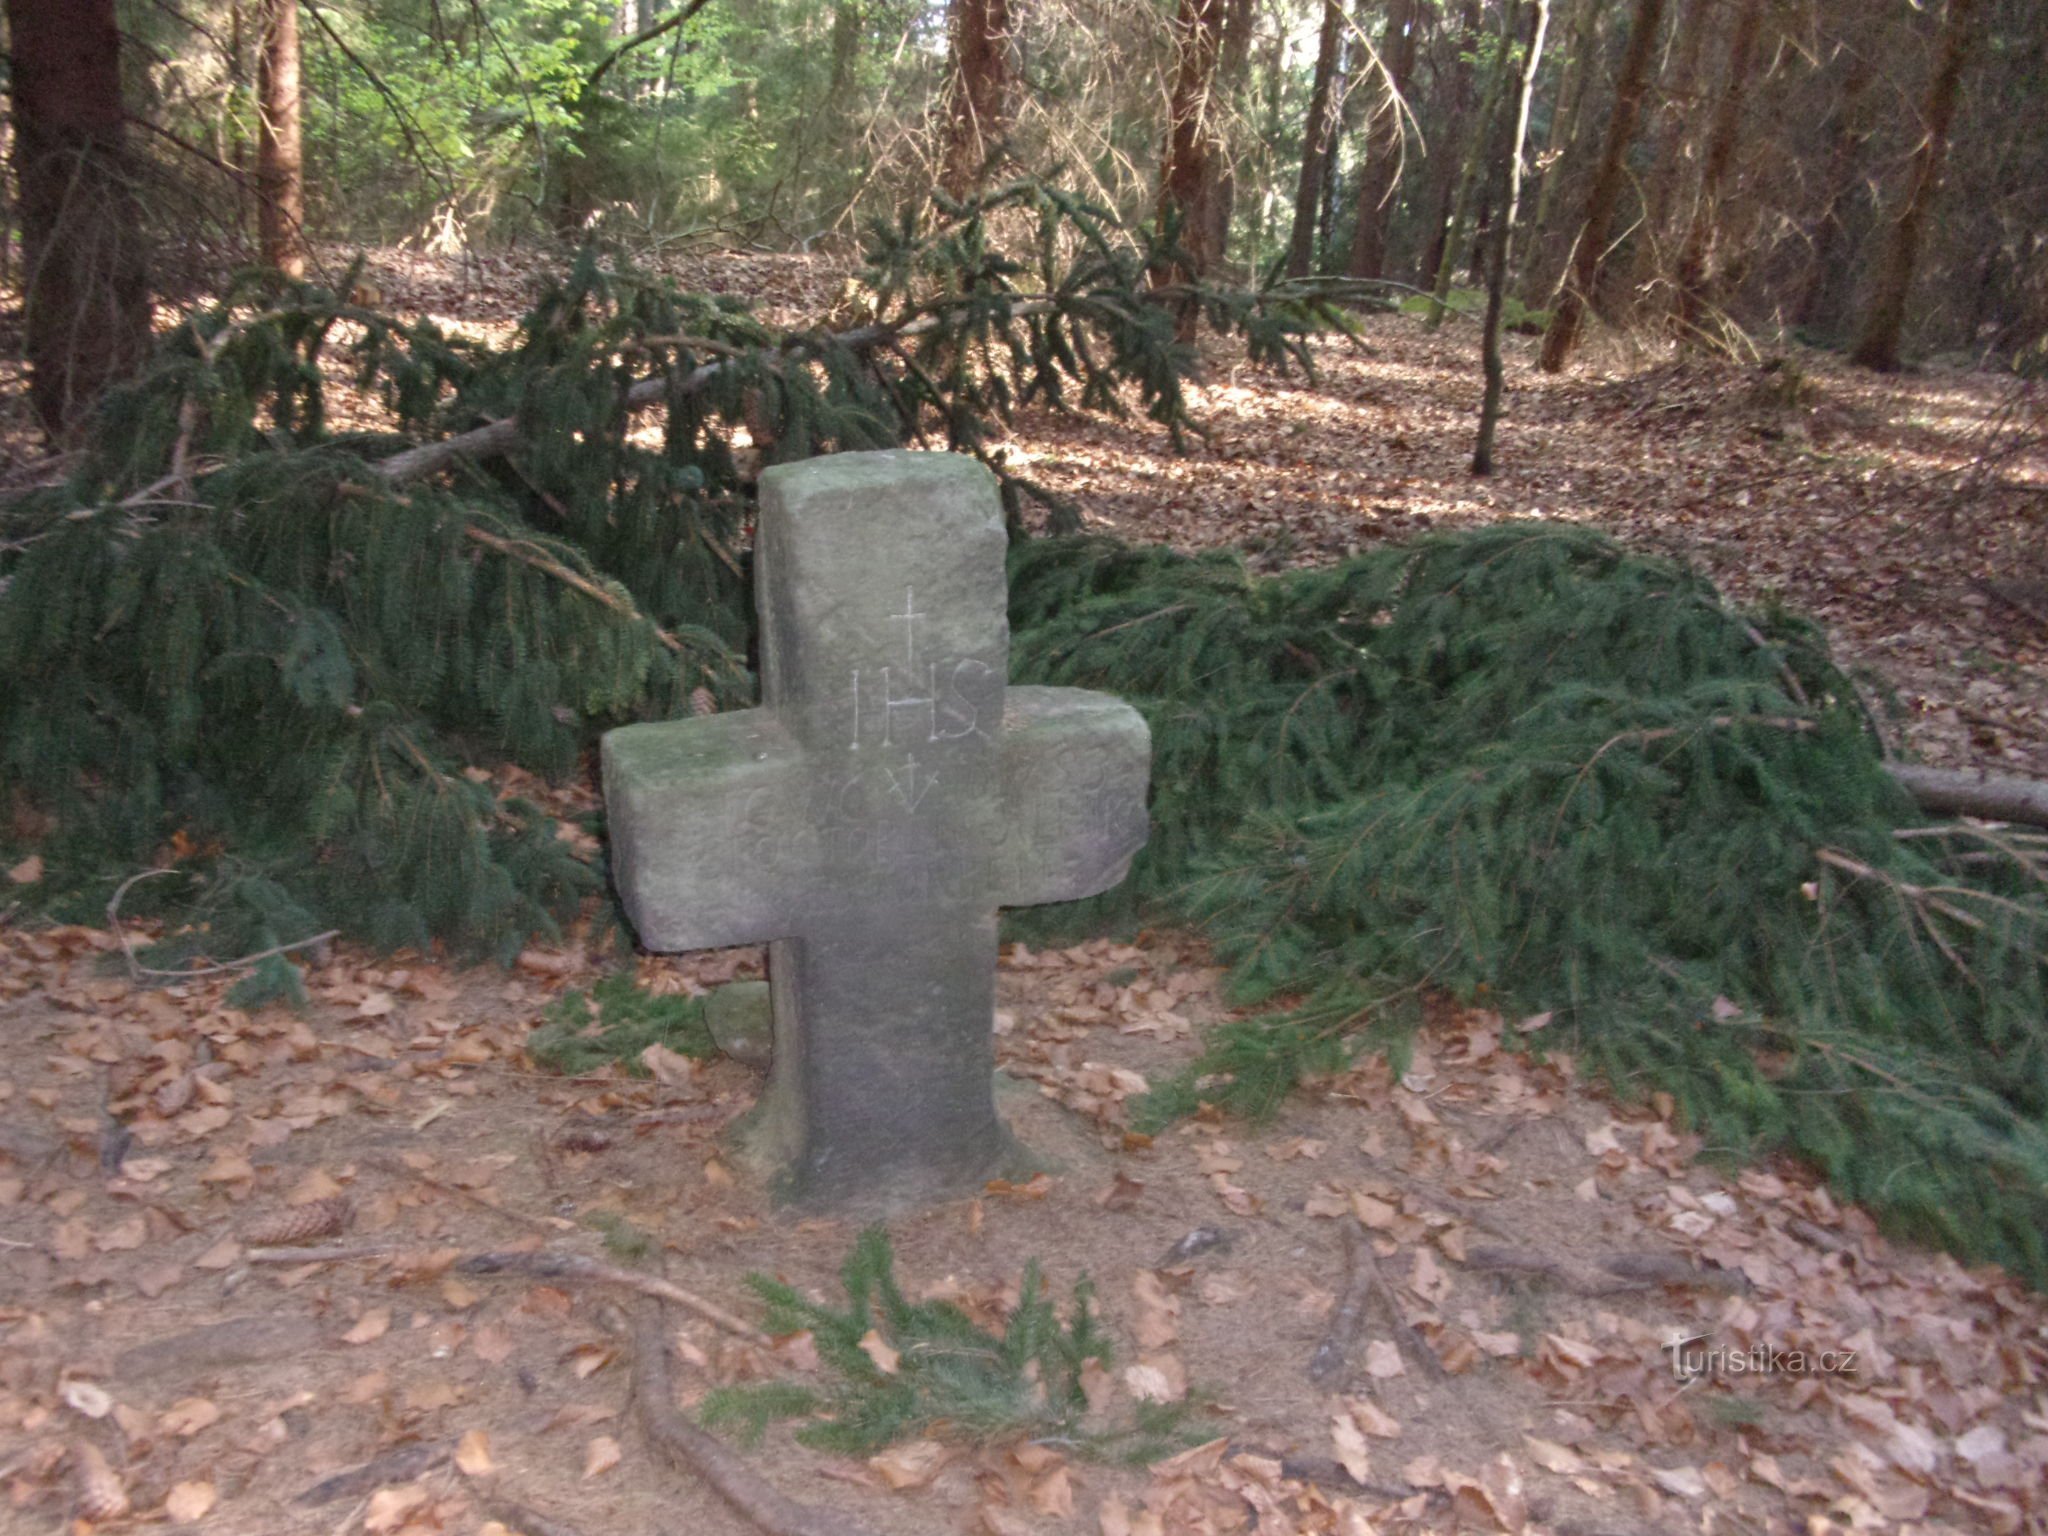 smírčí kříž u Tomášova (leží v lese na začátku osady)